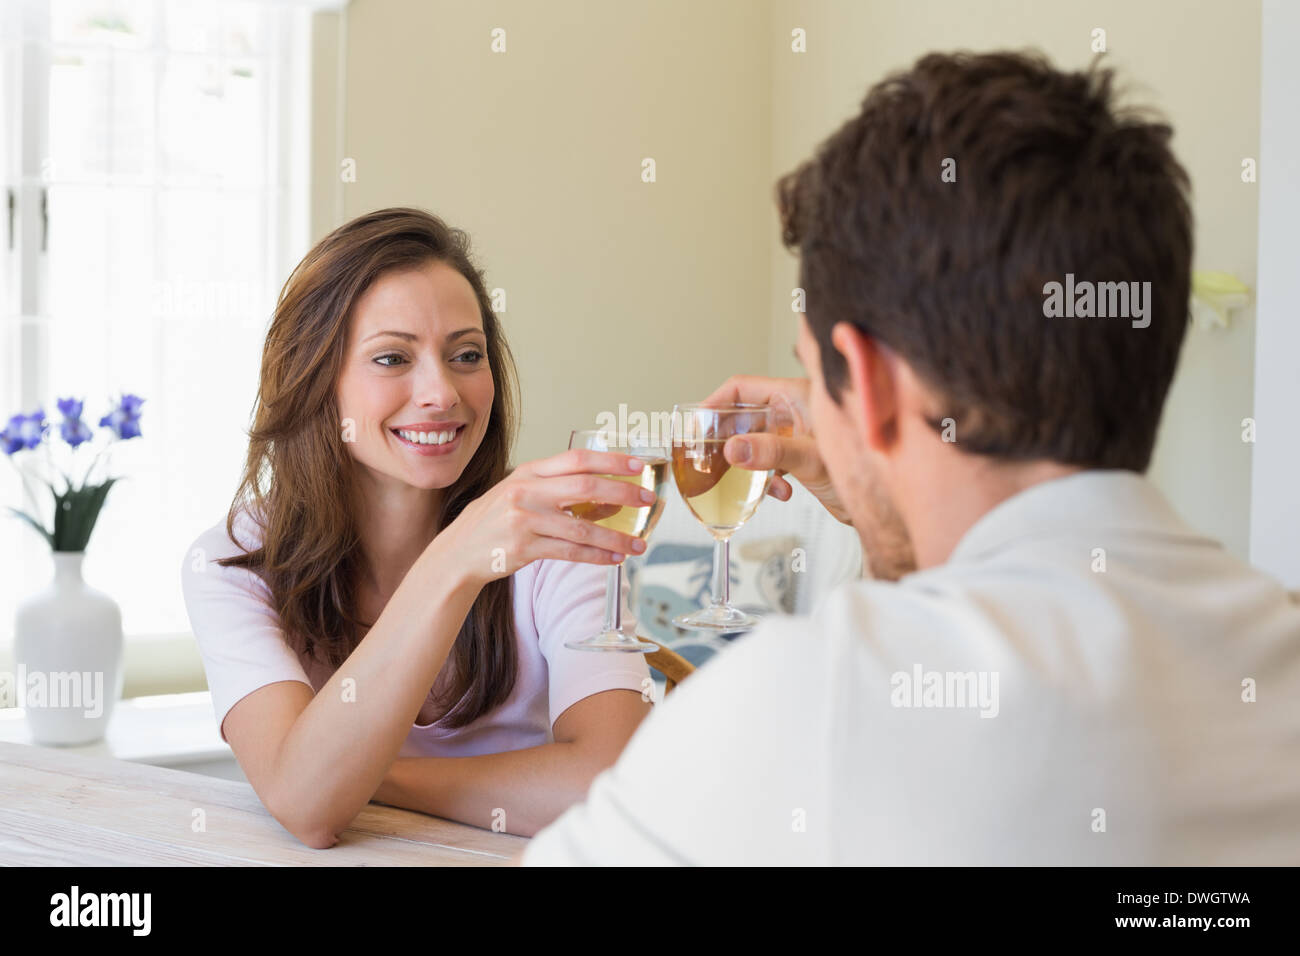 Couple toasting with wine lunettes à la maison Banque D'Images